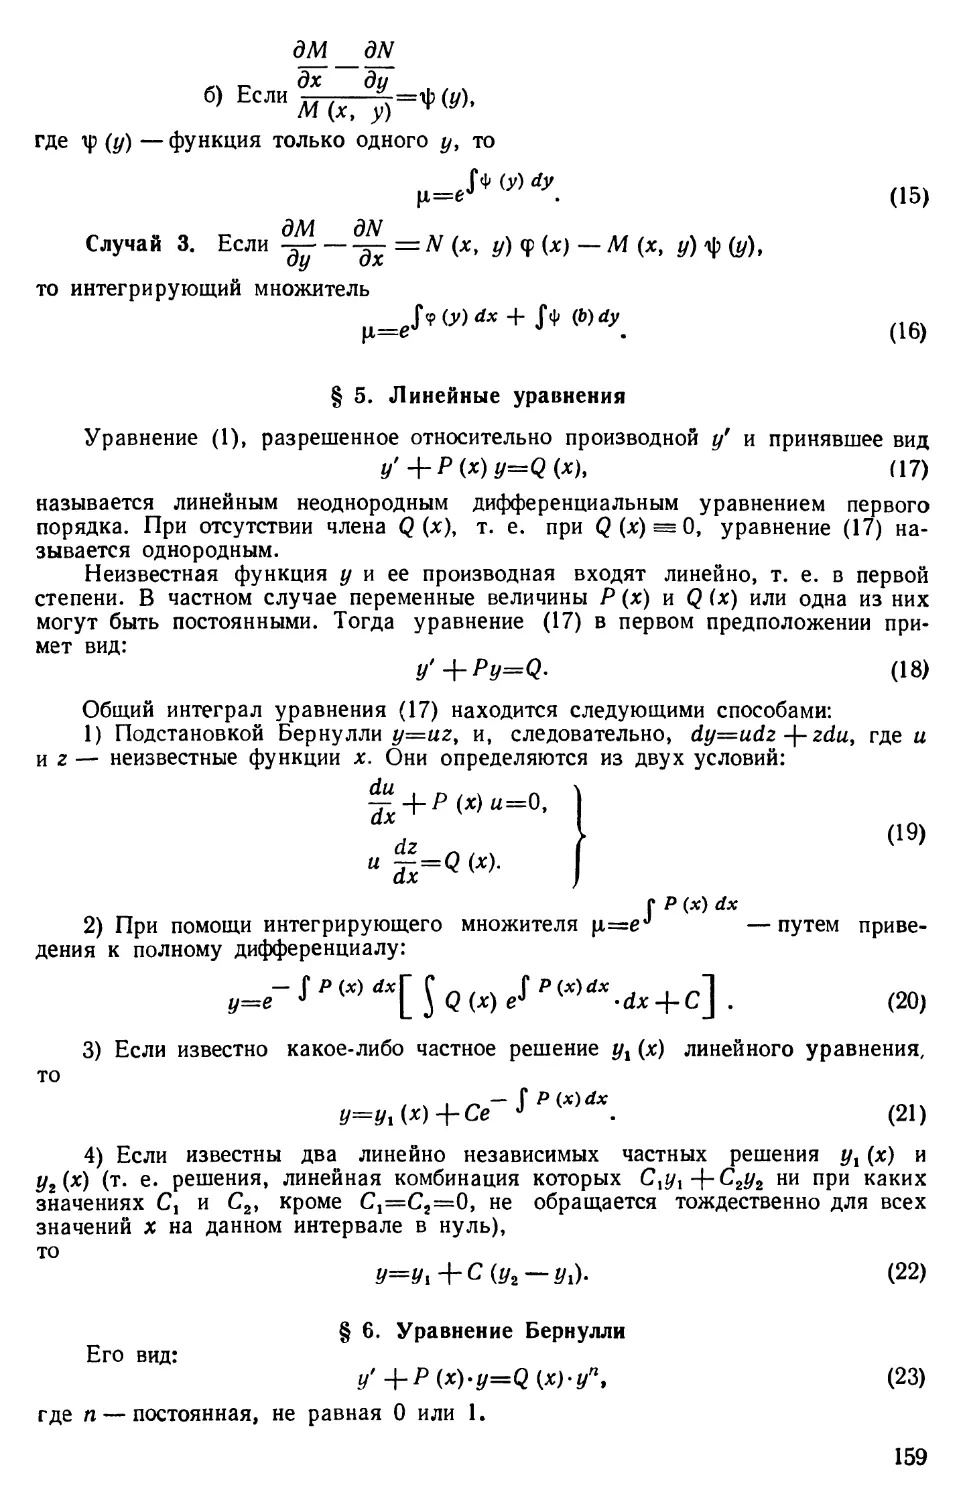 § 5. Линейные уравнения
§ 6. Уравнение Бернулли